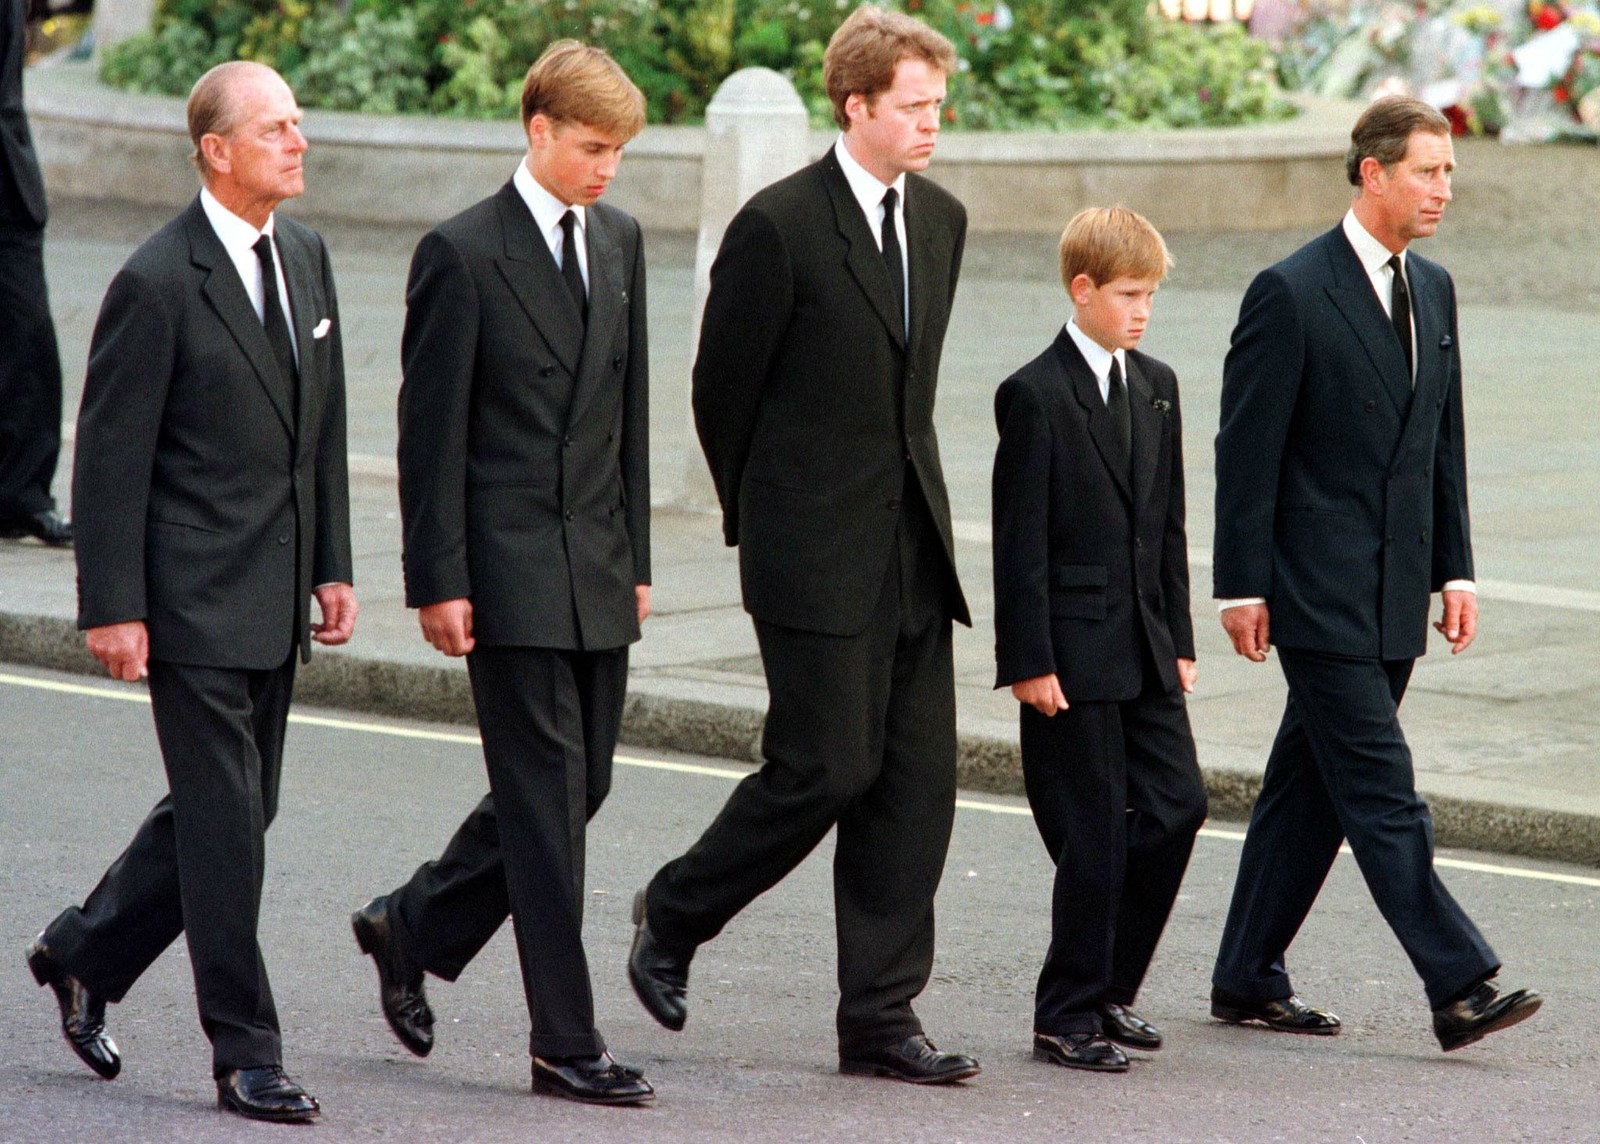 O príncipe Philip, duque de Edimburgo, o príncipe William, o conde Spencer, o príncipe Harry e o príncipe Charles, de Gales, caminham do lado de fora da Abadia de Westminster durante o funeral de Diana, princesa de Gales, em 6 de setembro de 1997  — Foto: JEFF J MITCHELL / POOL / AFP